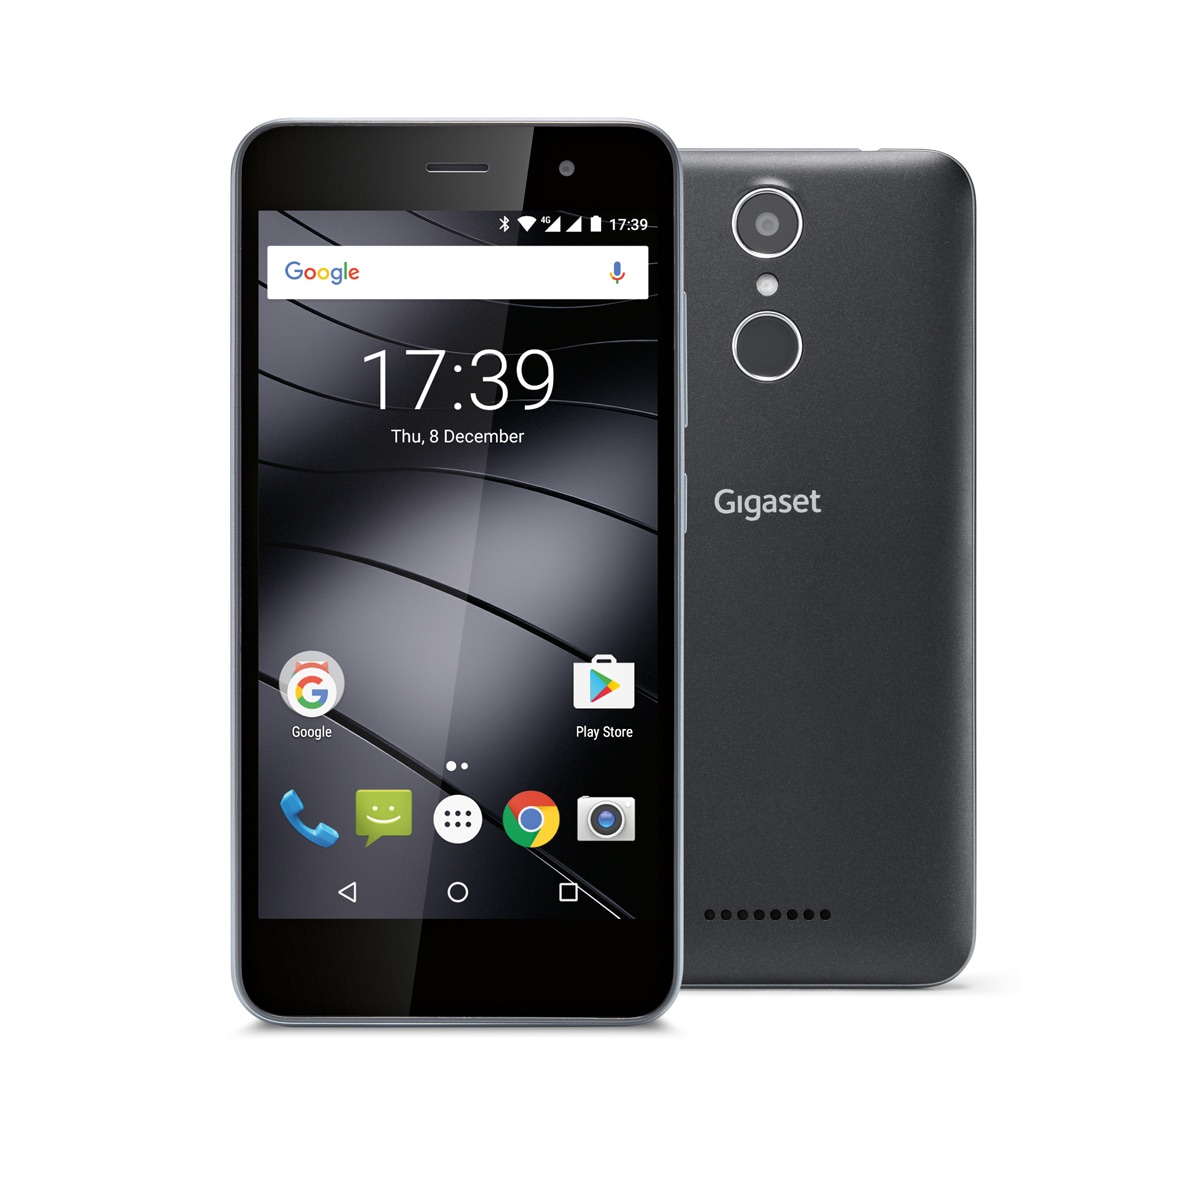 Gigaset lancia un nuovo smartphone Android in Italia: ecco Gigaset GS160 (foto)